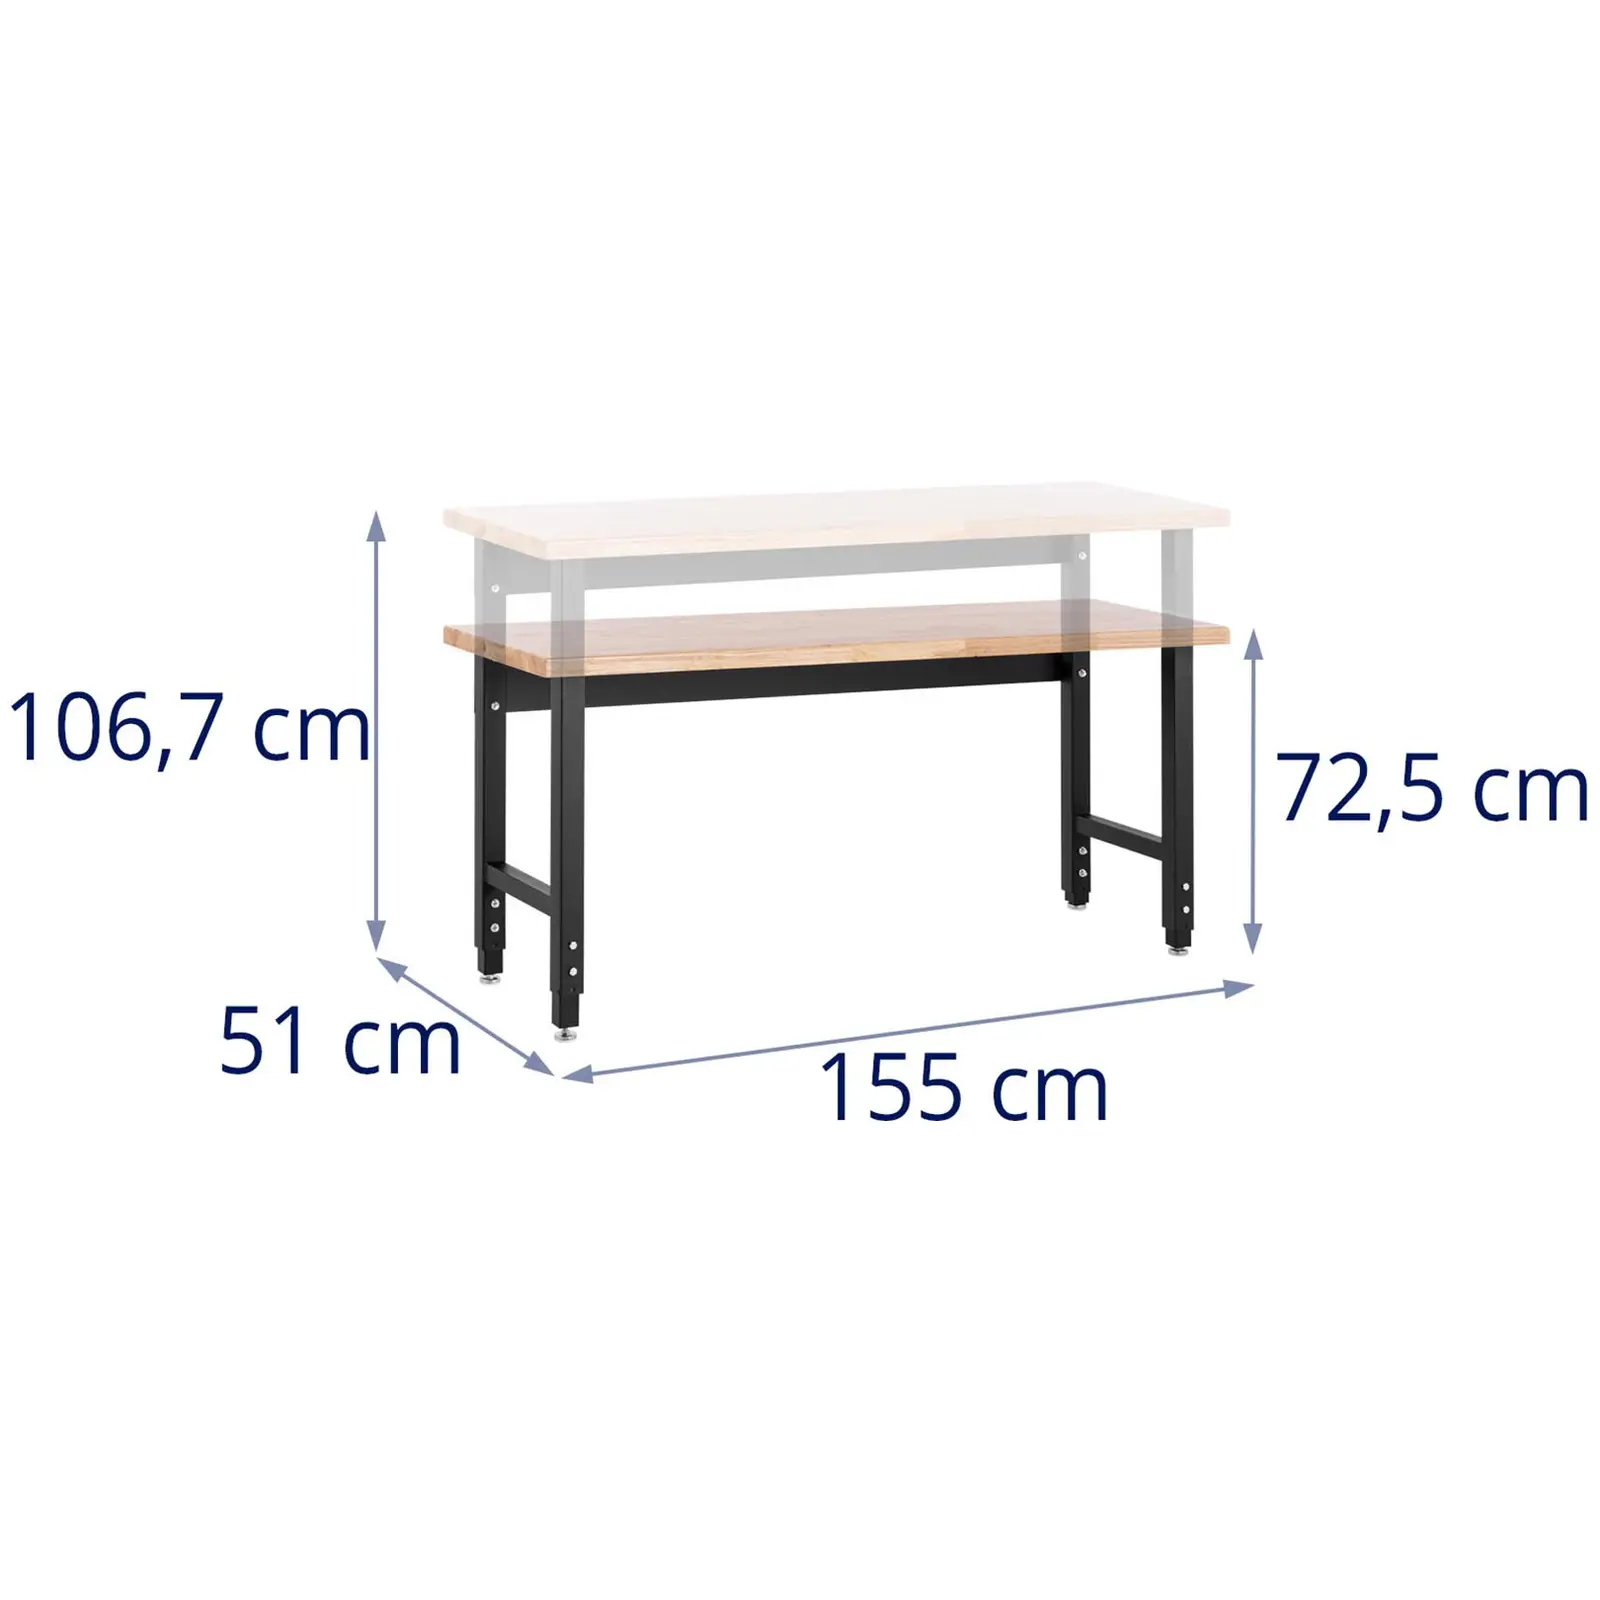 Stół warsztatowy - 155 x 51 cm - regulowana wysokość 72,5-106,7 cm - 680 kg